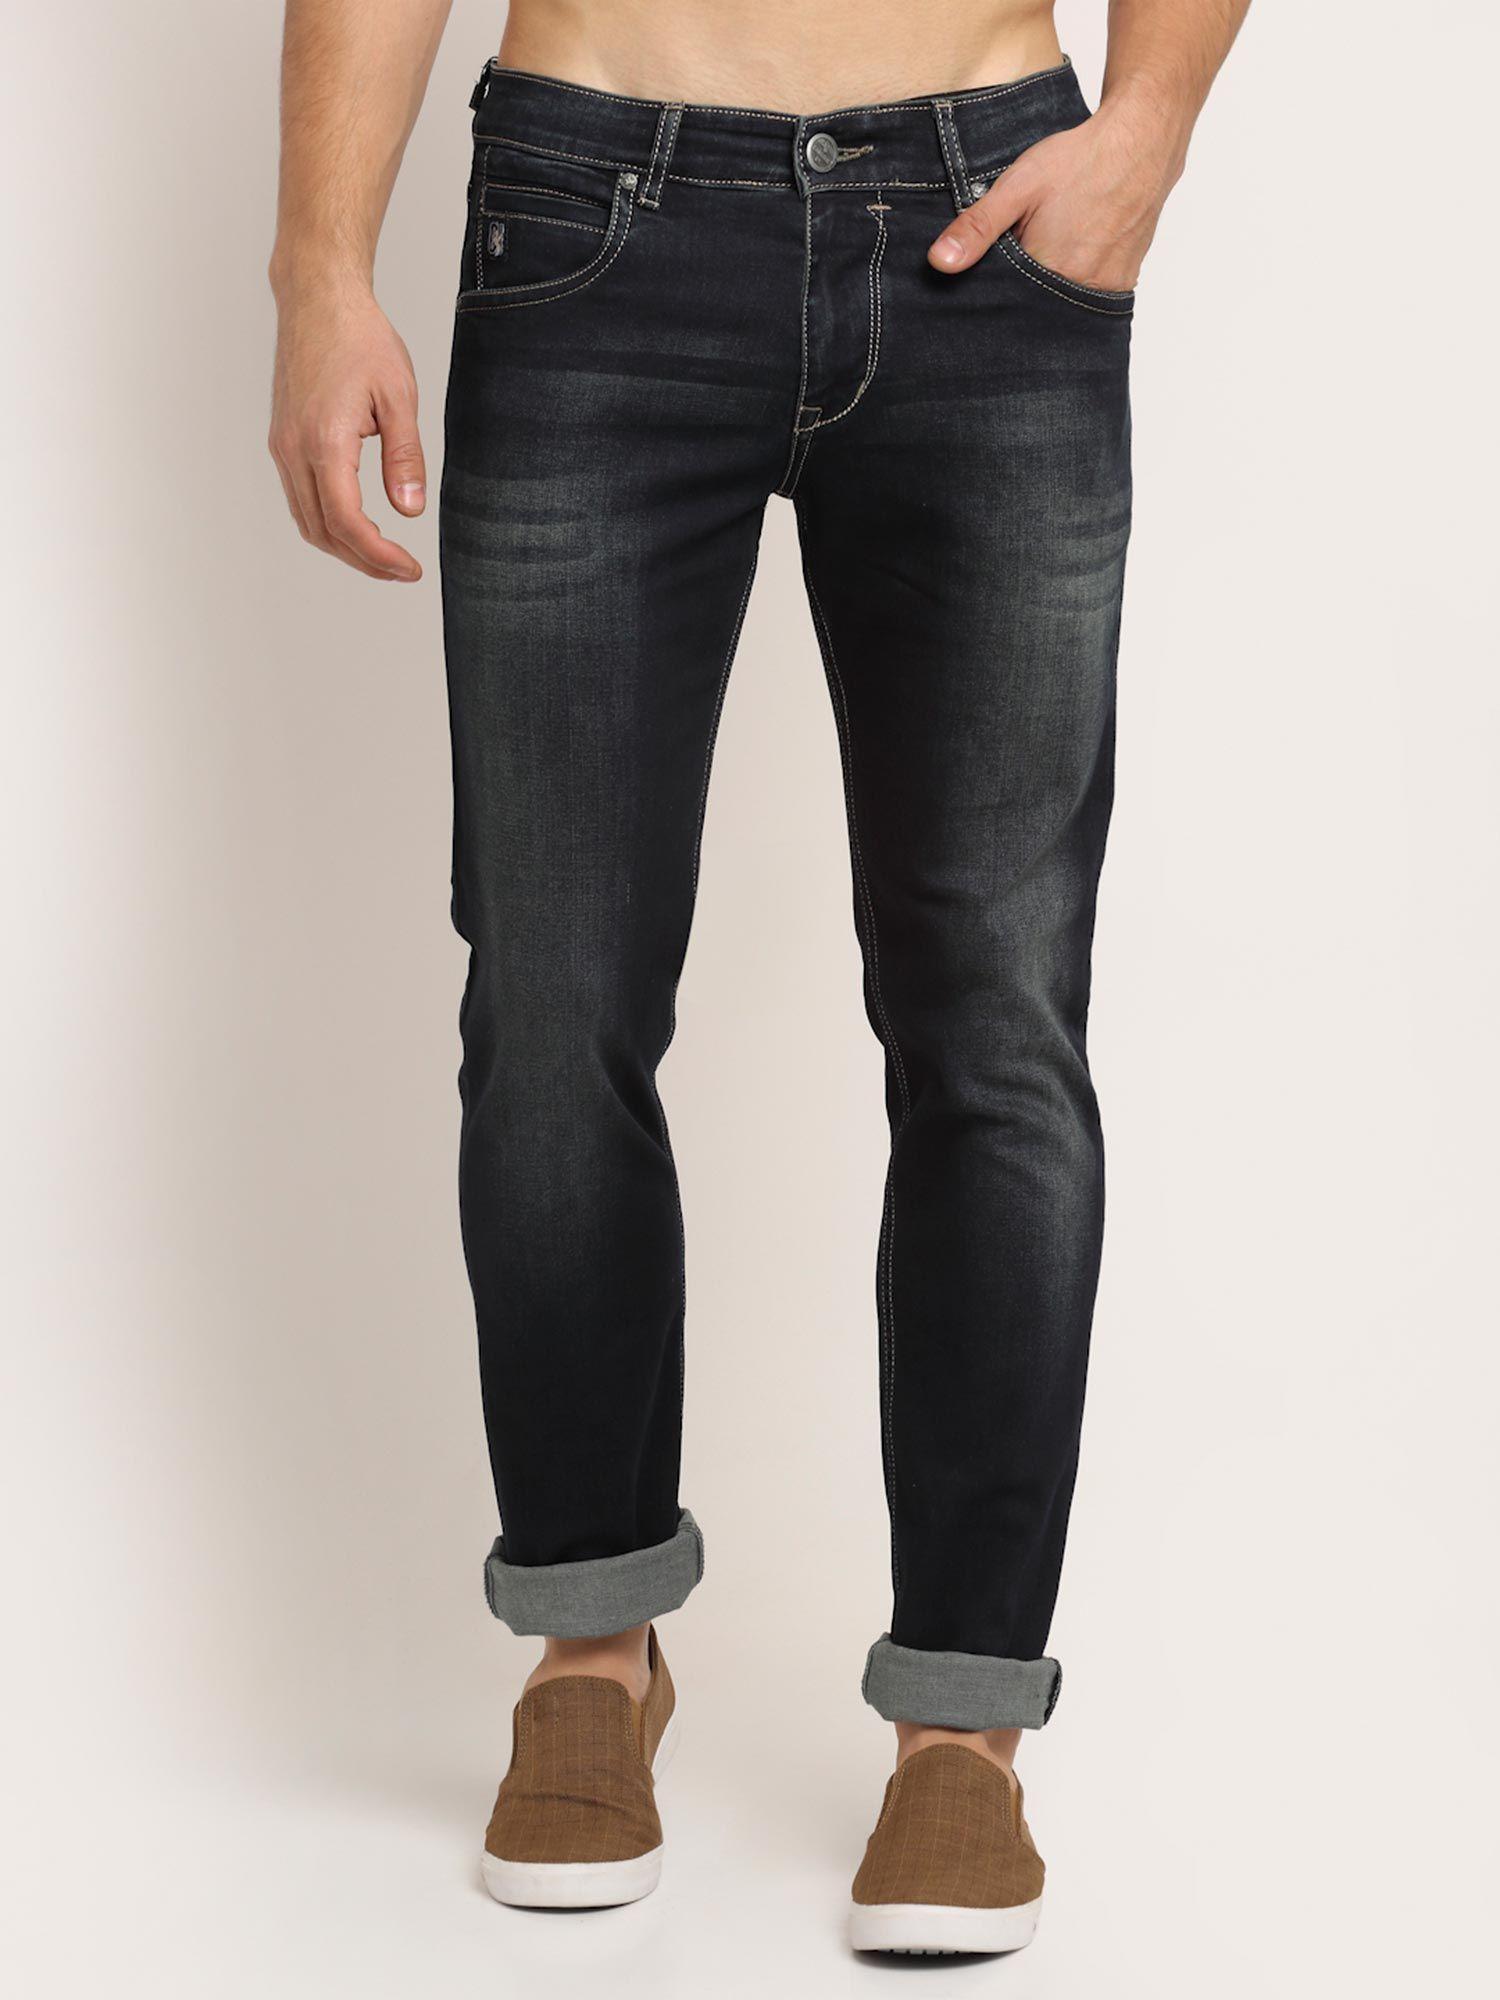 carbon-men-jeans